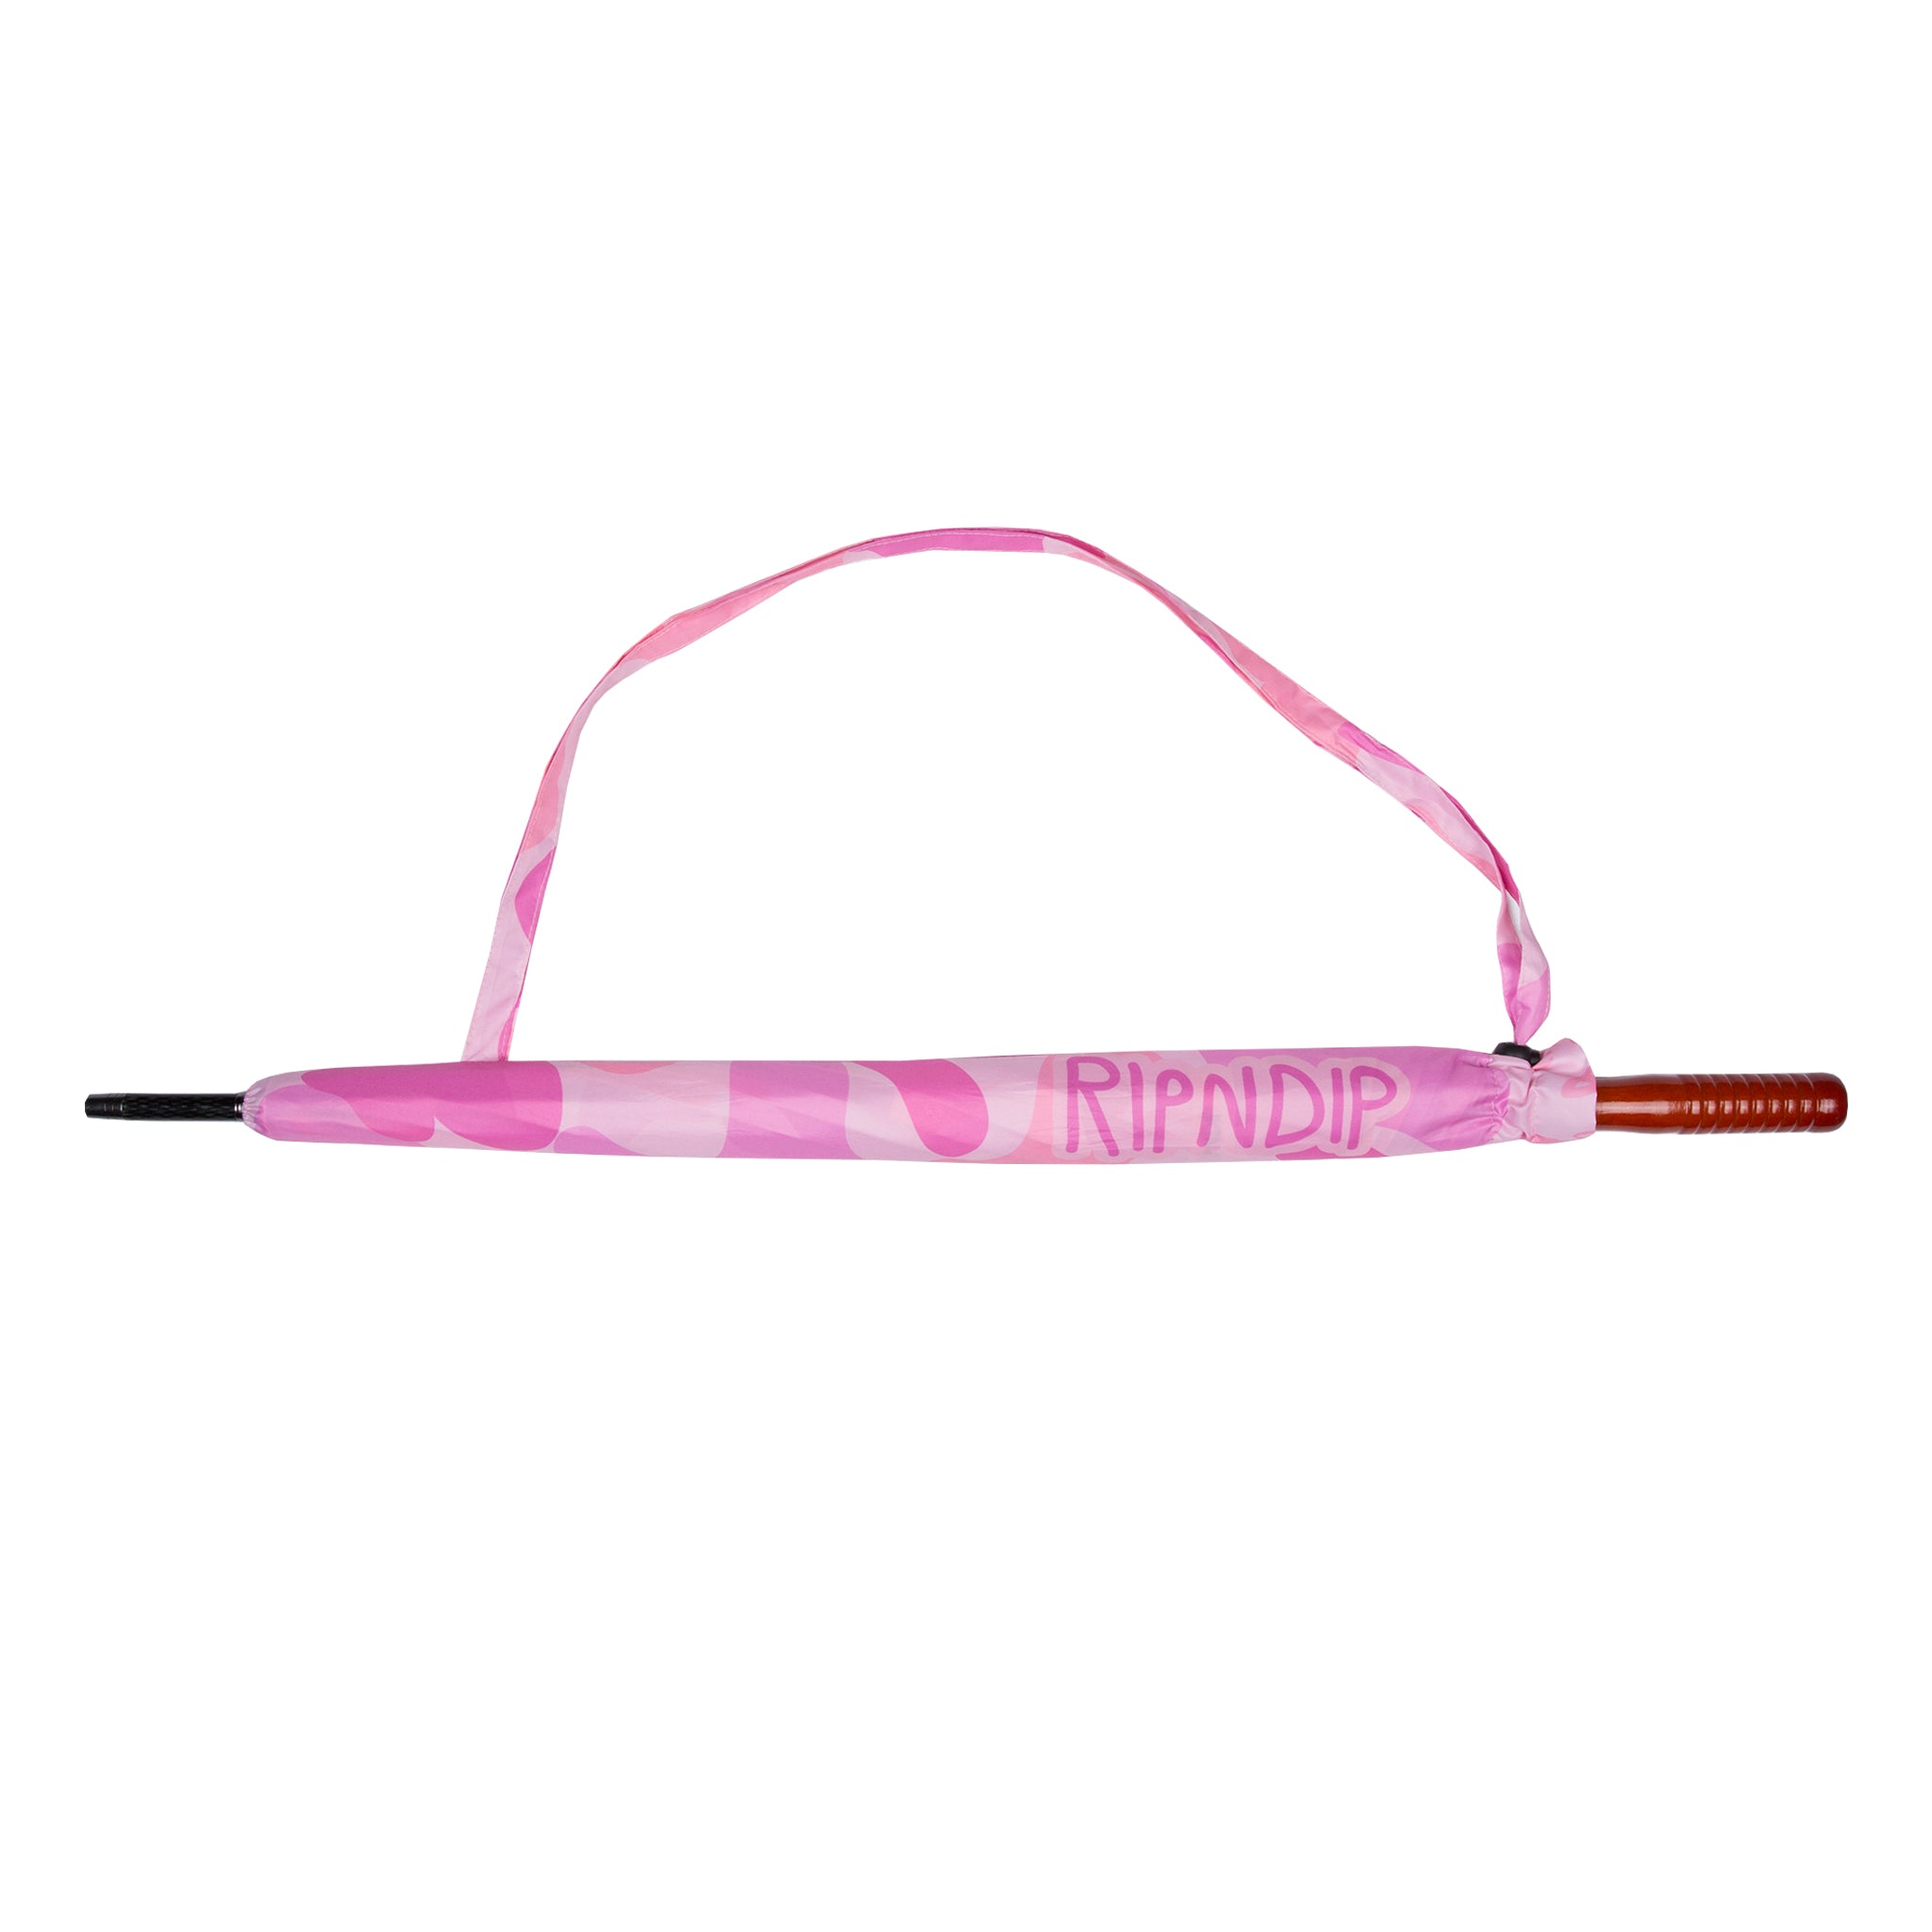 RipNDip Pink Camo Umbrella